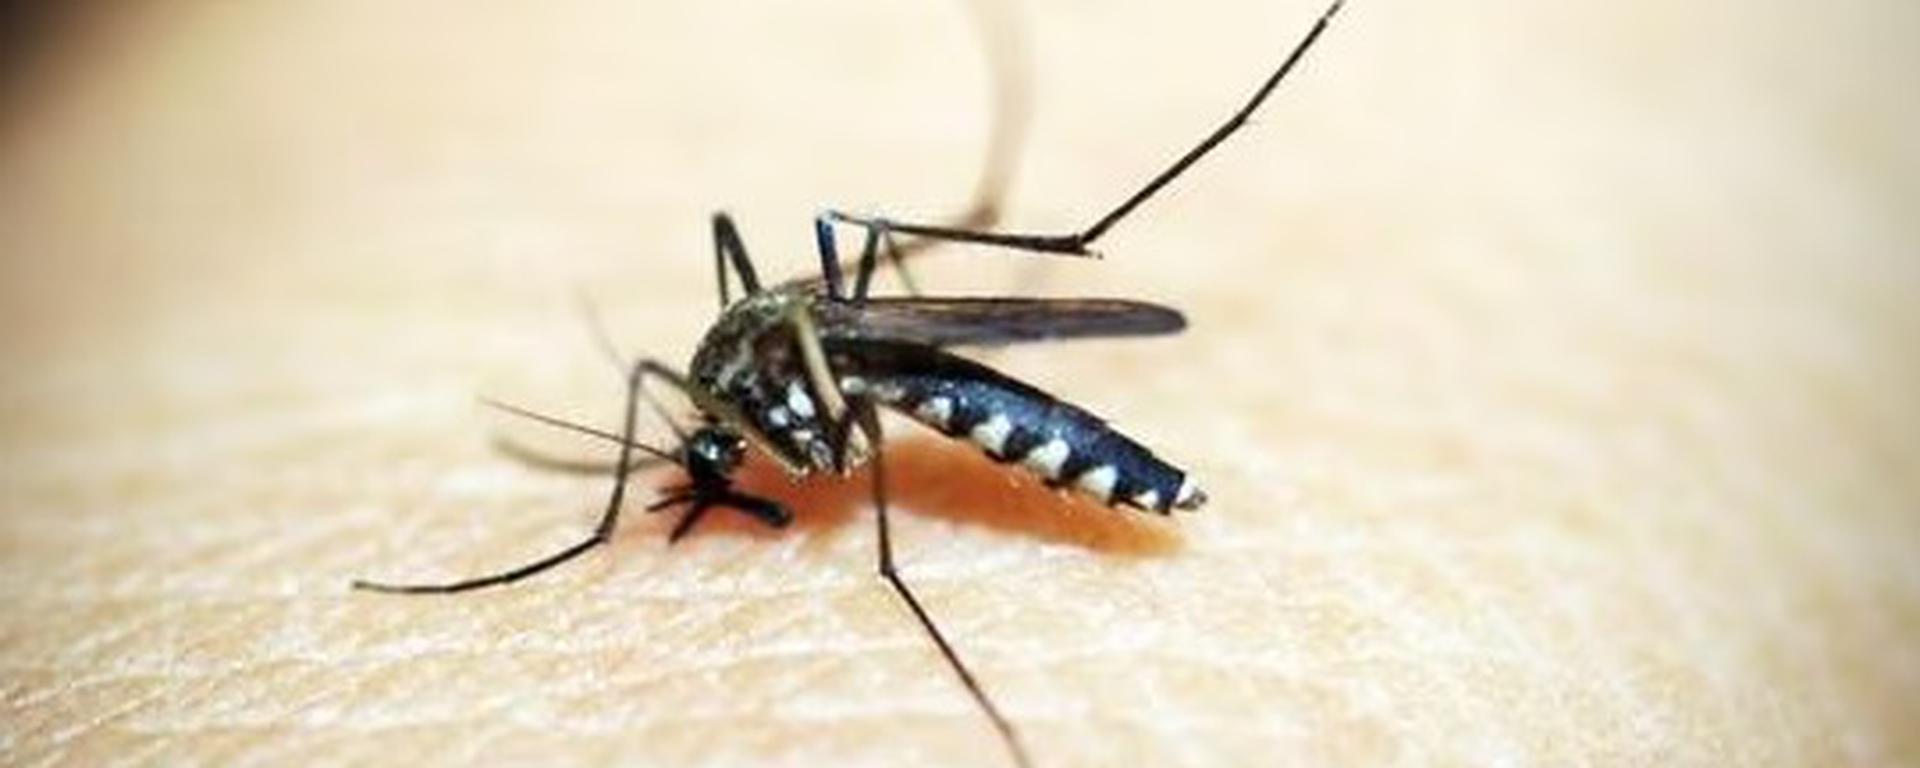 Incremento de casos de dengue en el Perú: todos los detalles sobre la emergencia sanitaria, fumigaciones y fallecidos